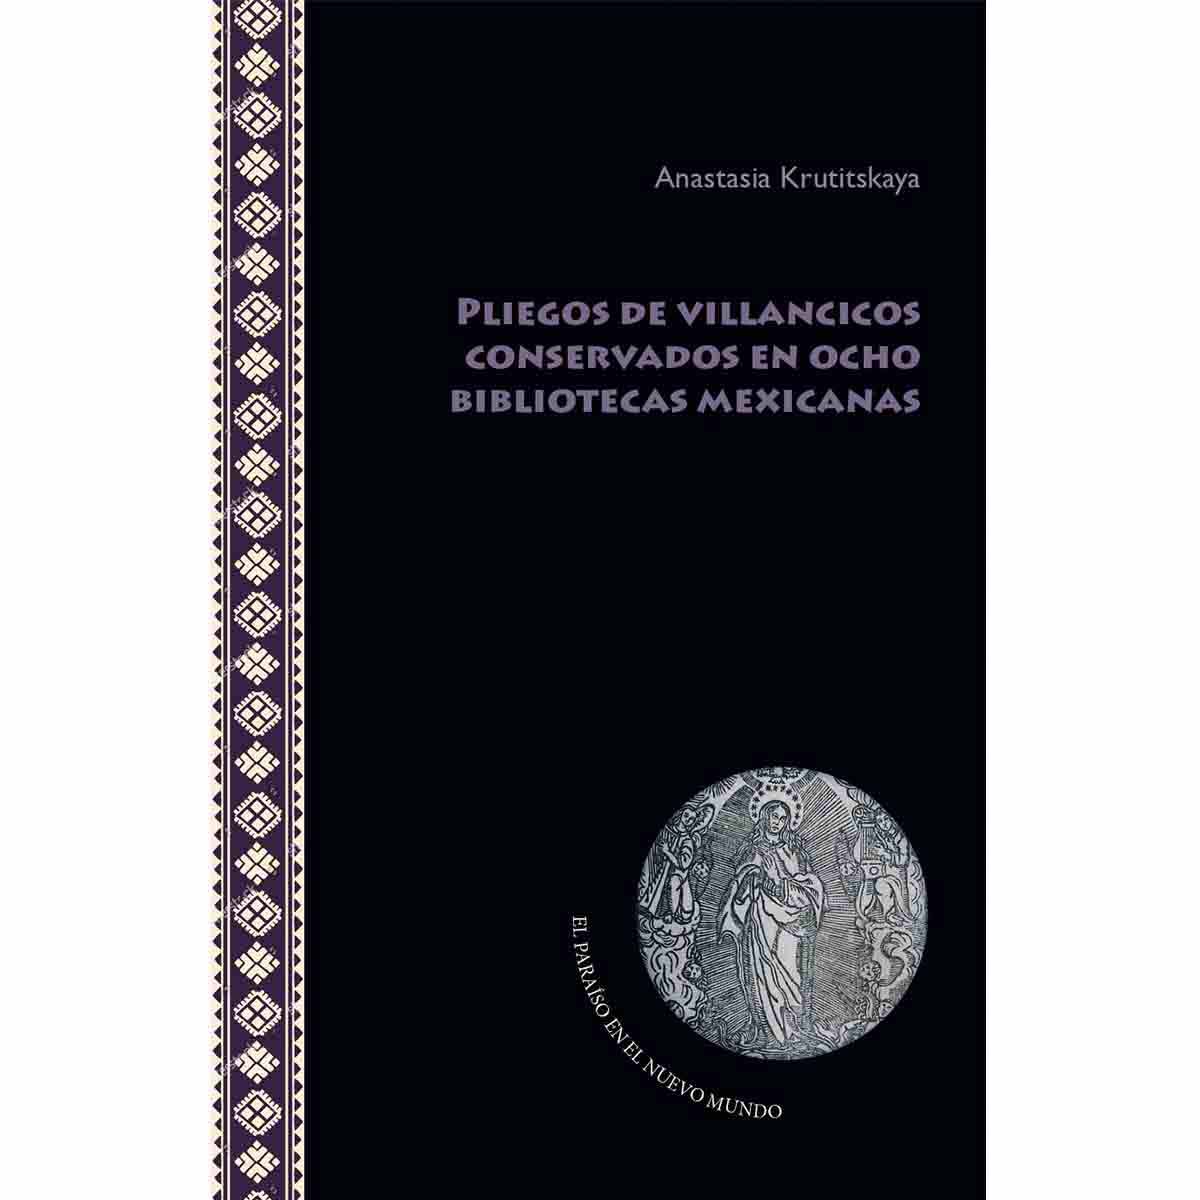 PLIEGOS DE VILLANCICOS CONSERVADOS EN OCHO BIBLIOTECAS MEXICANAS